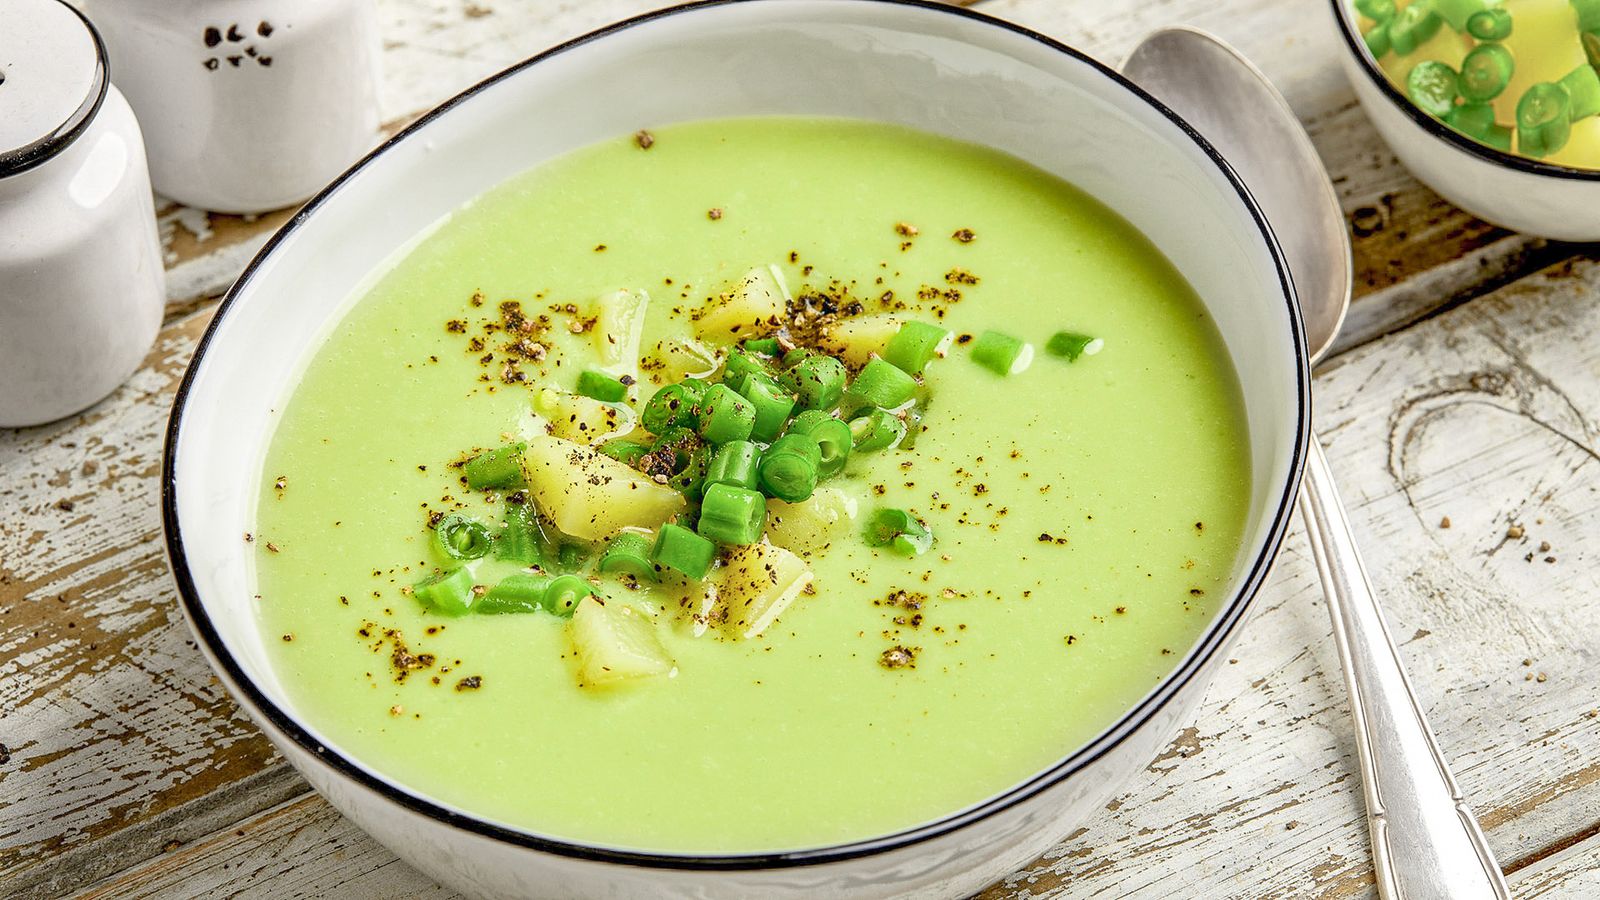 Bohnensuppe mit grünen Bohnen